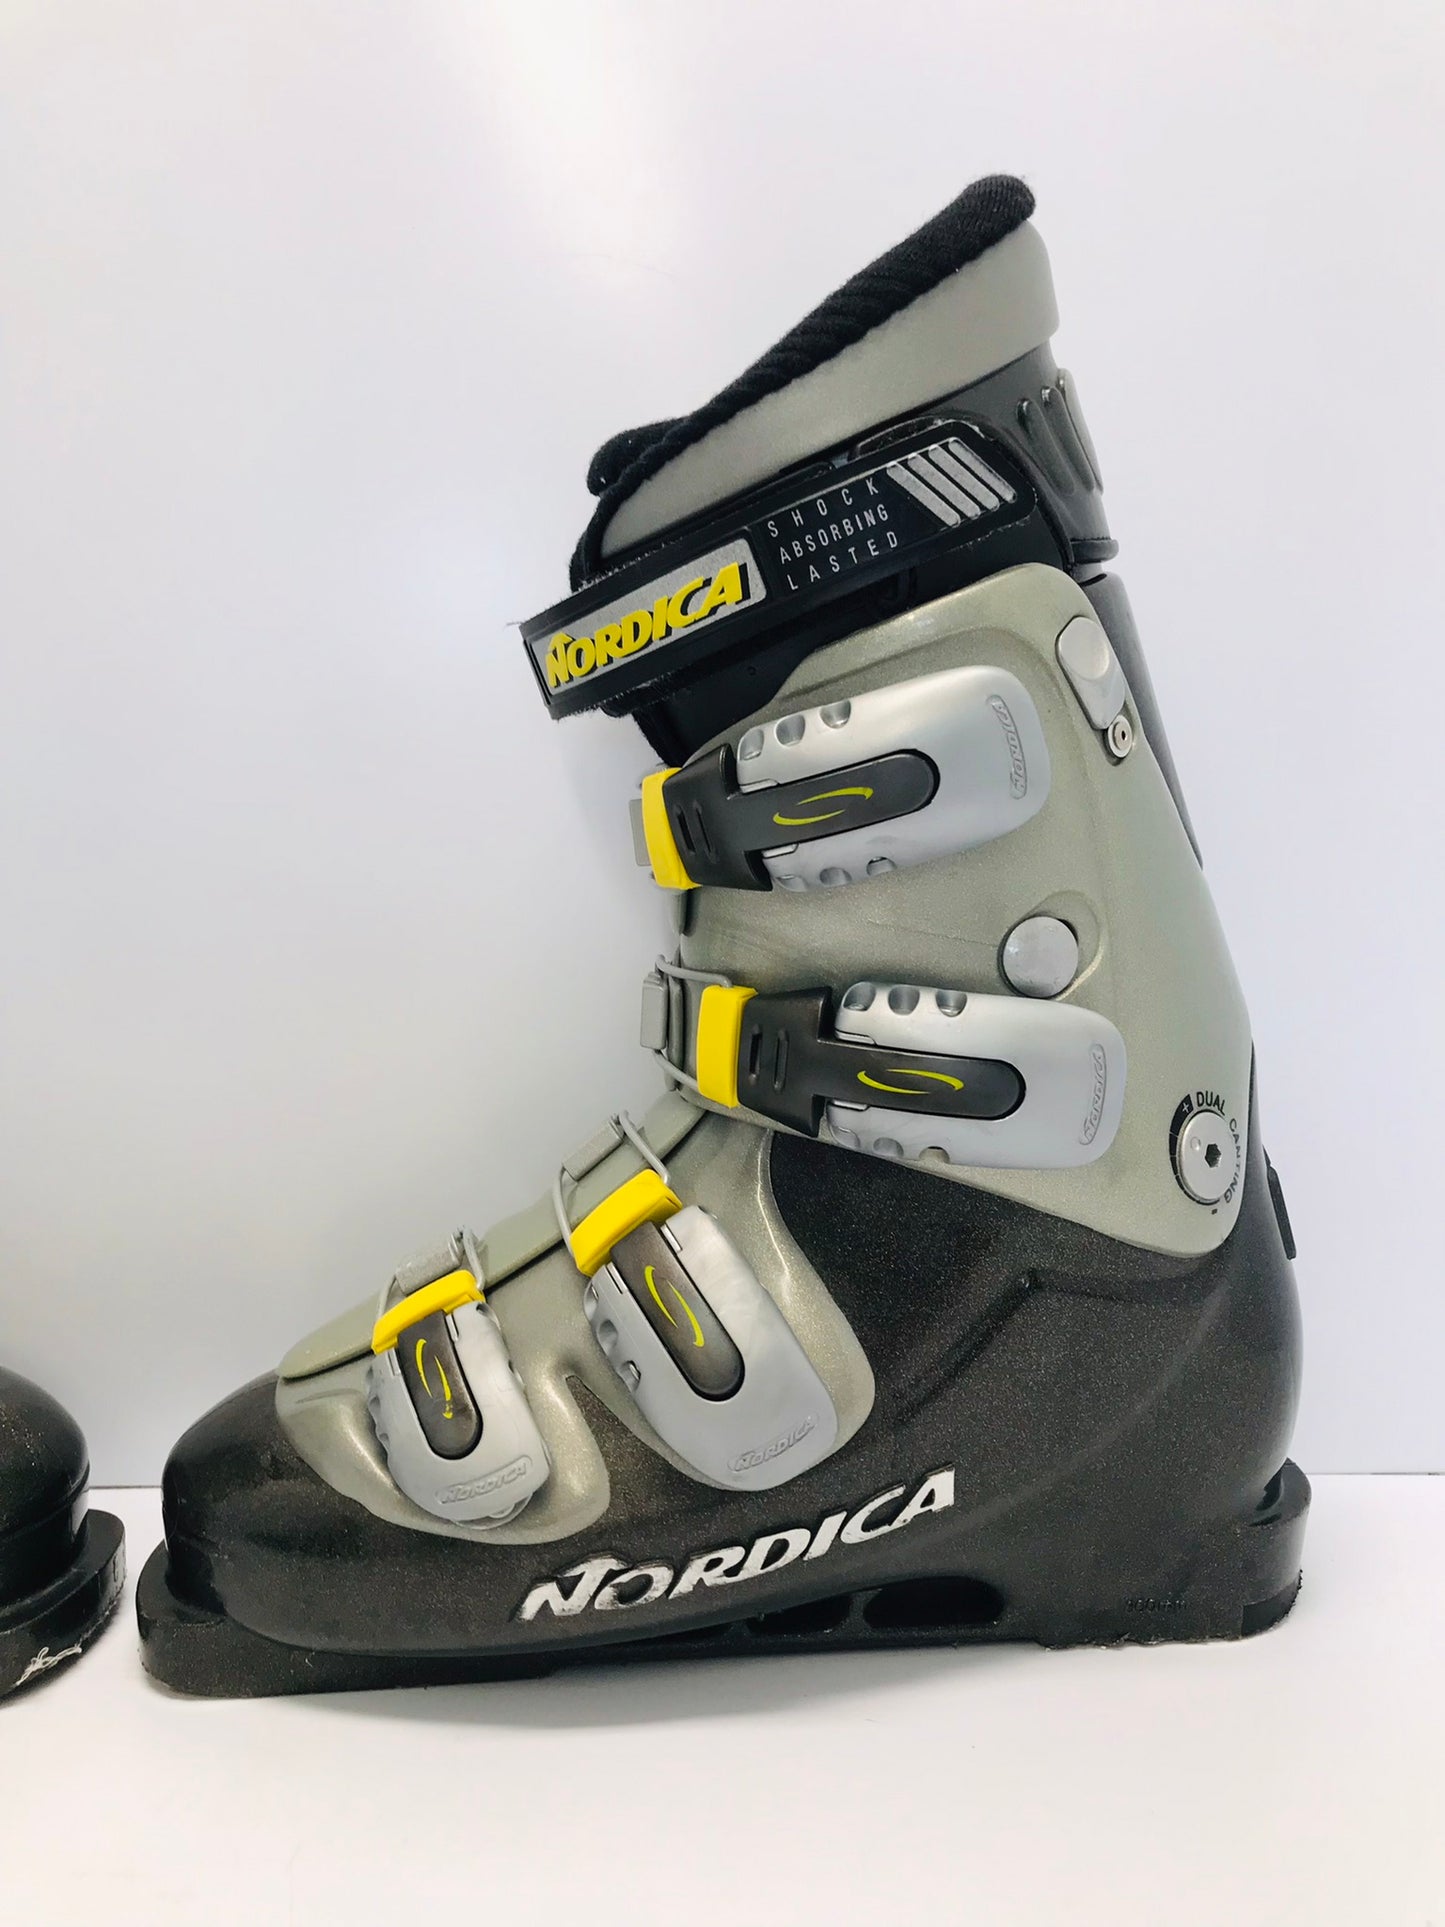 Ski Boots Mondo Size 26.0 Men's Size 8 Ladies Size 9 Nordica Grey Yellow